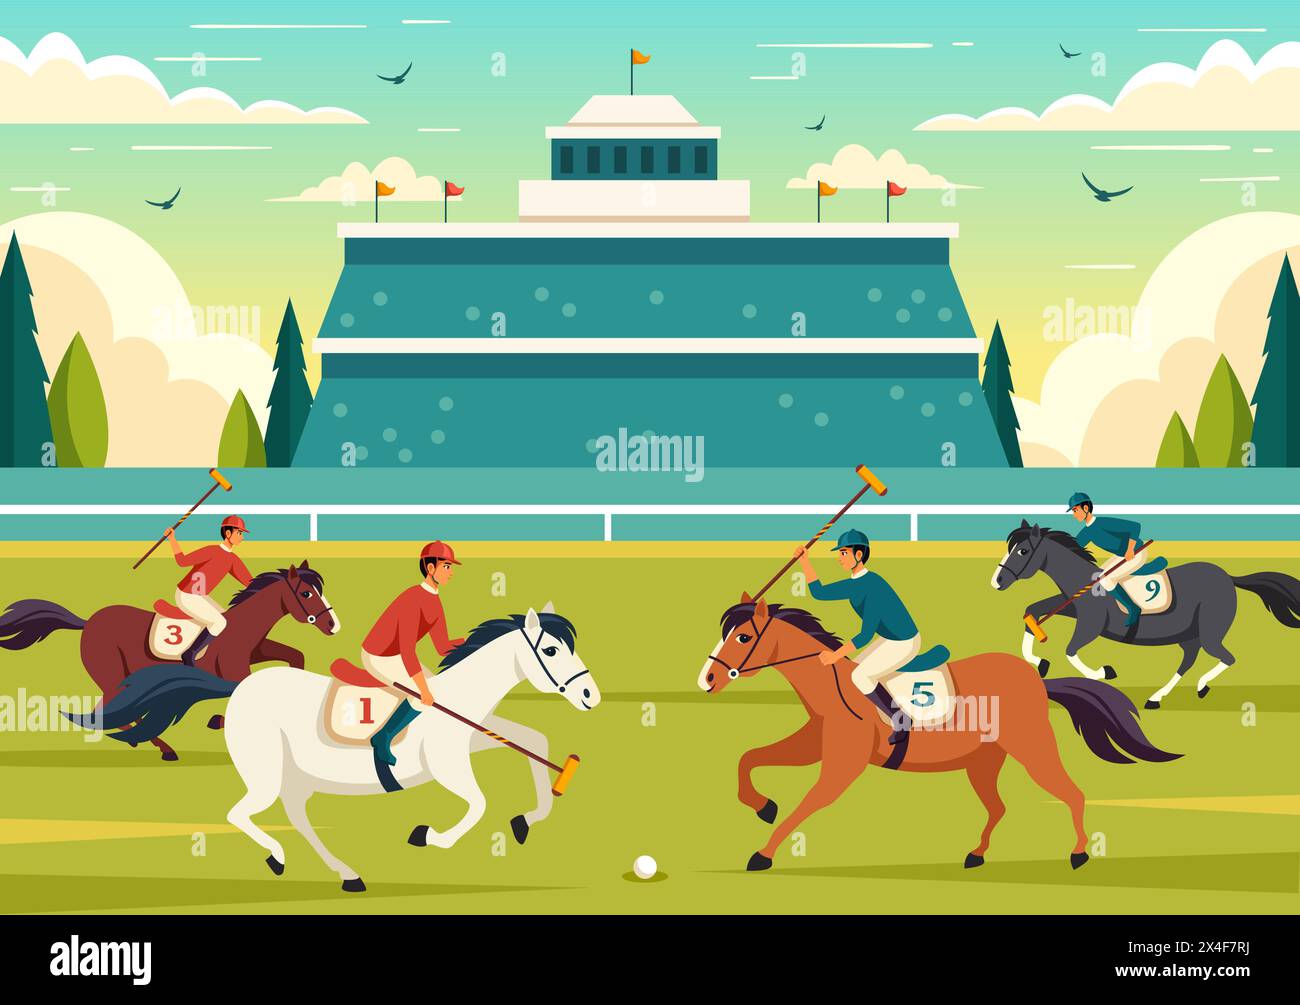 Polo Horse Sports illustration vectorielle avec le cheval d'équitation de joueur et l'équipement d'utilisation de bâton de maintien mis en compétition dans le fond de dessin animé plat Illustration de Vecteur